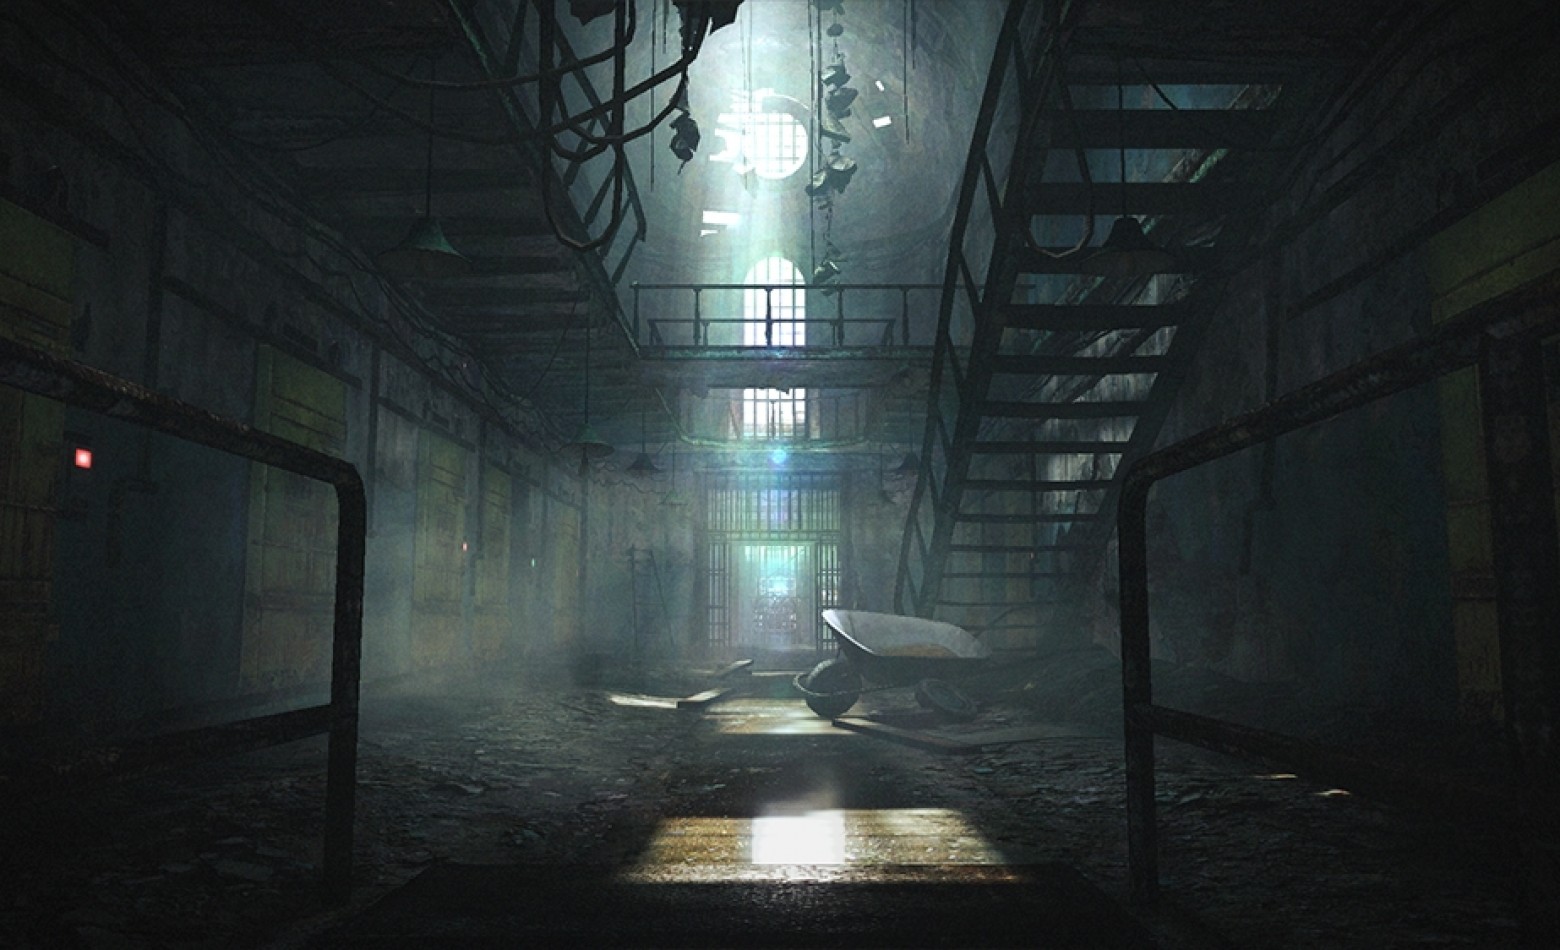 Imagens mostram o cenário de Resident Evil Revelations 2